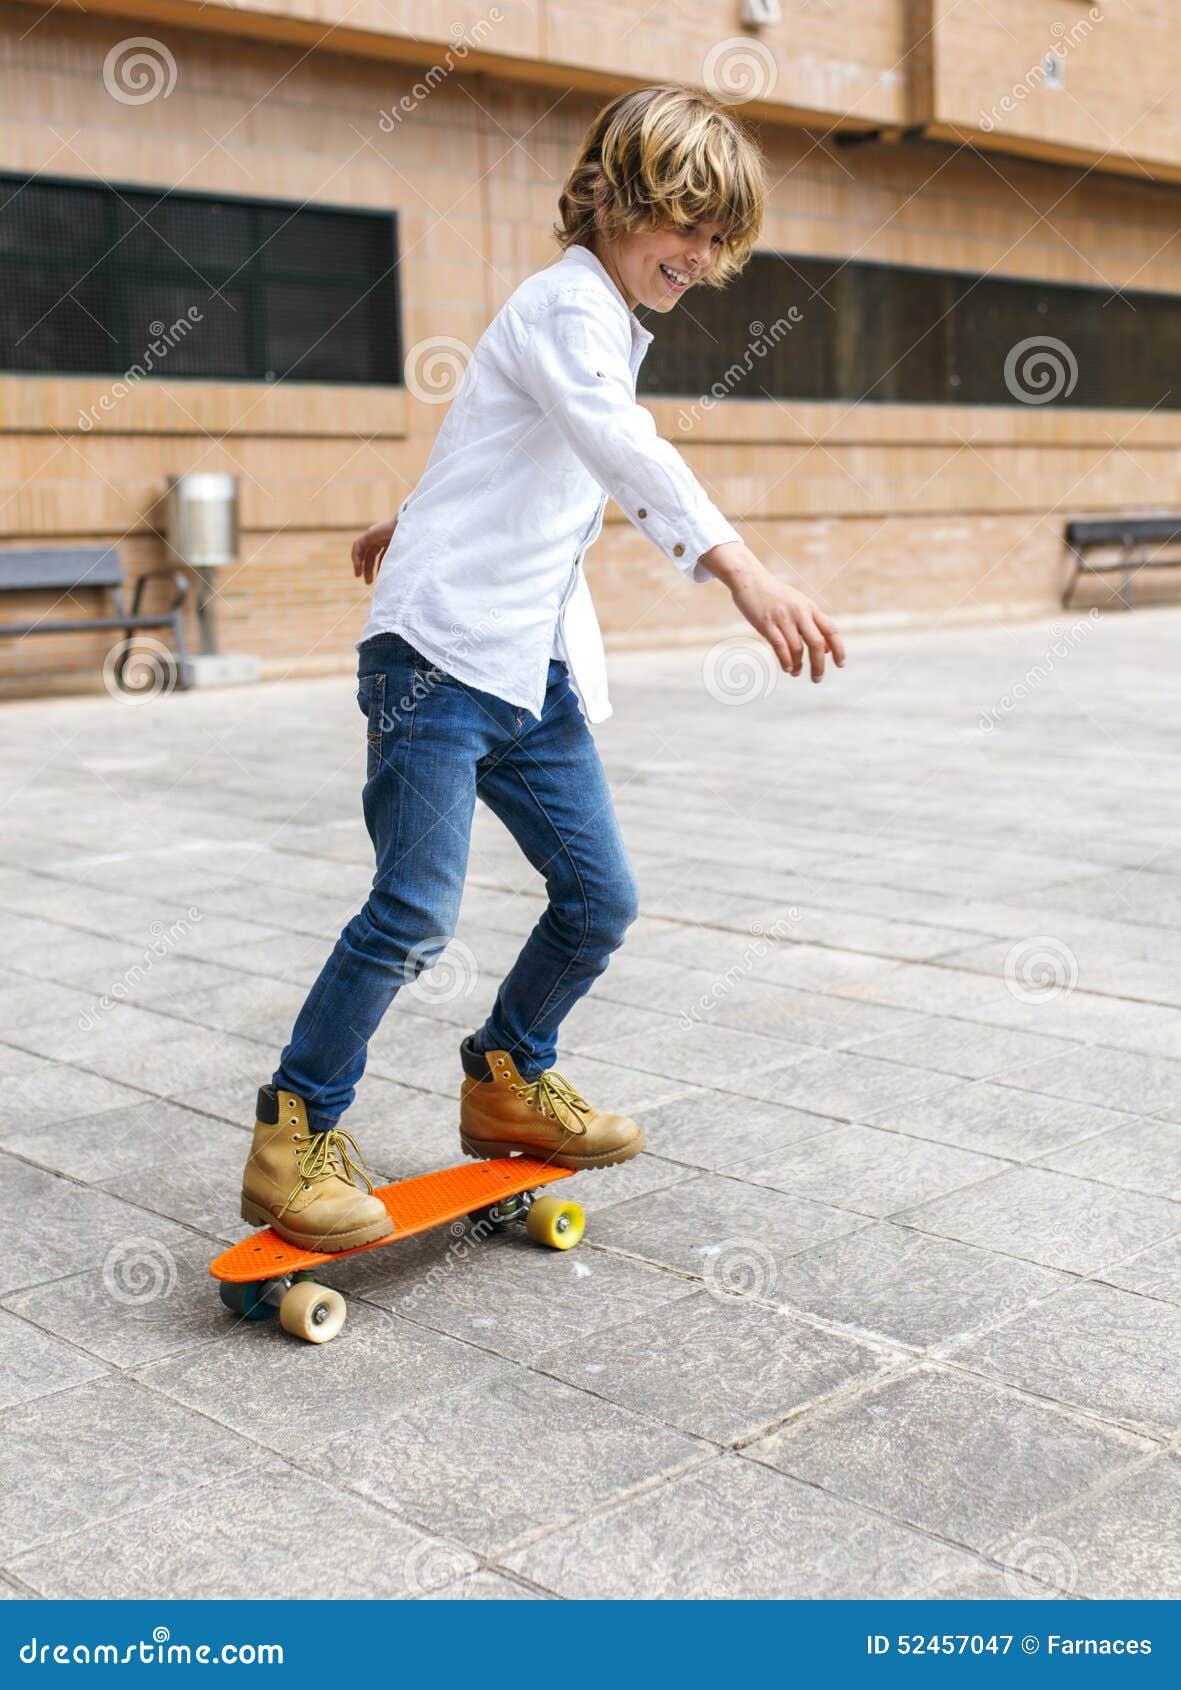 Niño del skater imagen de archivo. Imagen de rubio, juego - 52457047